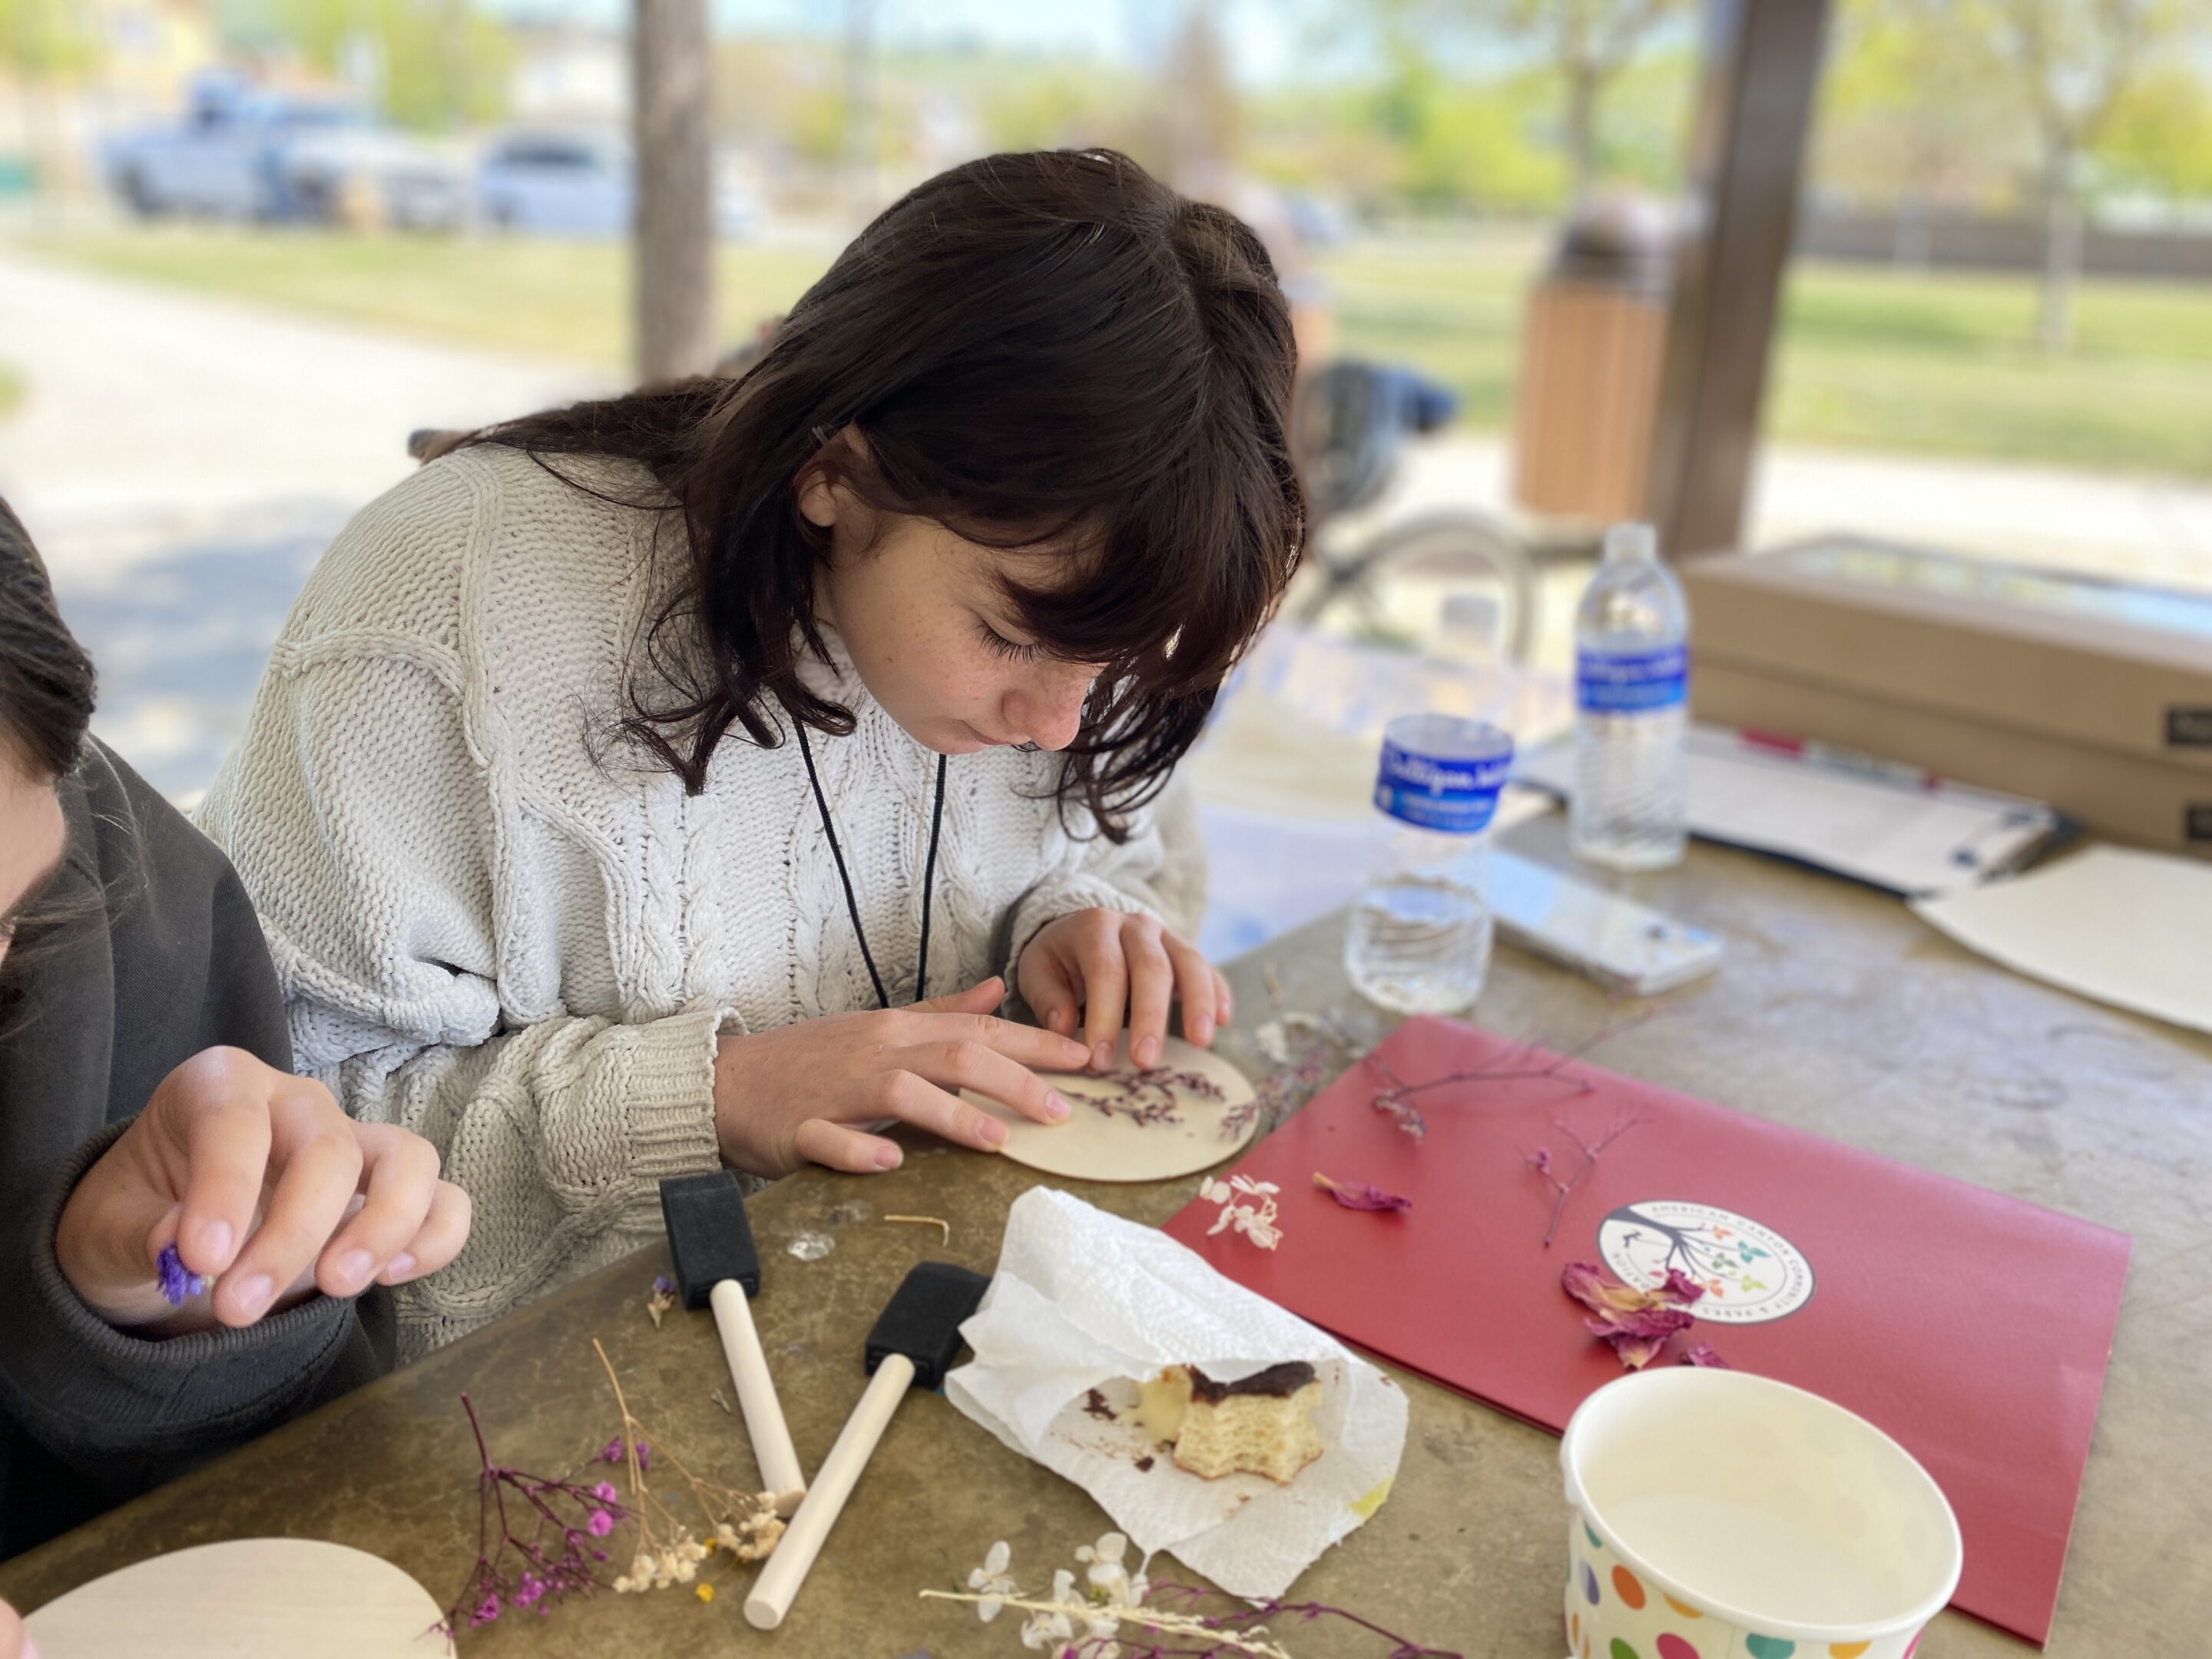 Young teen girl creating nature art